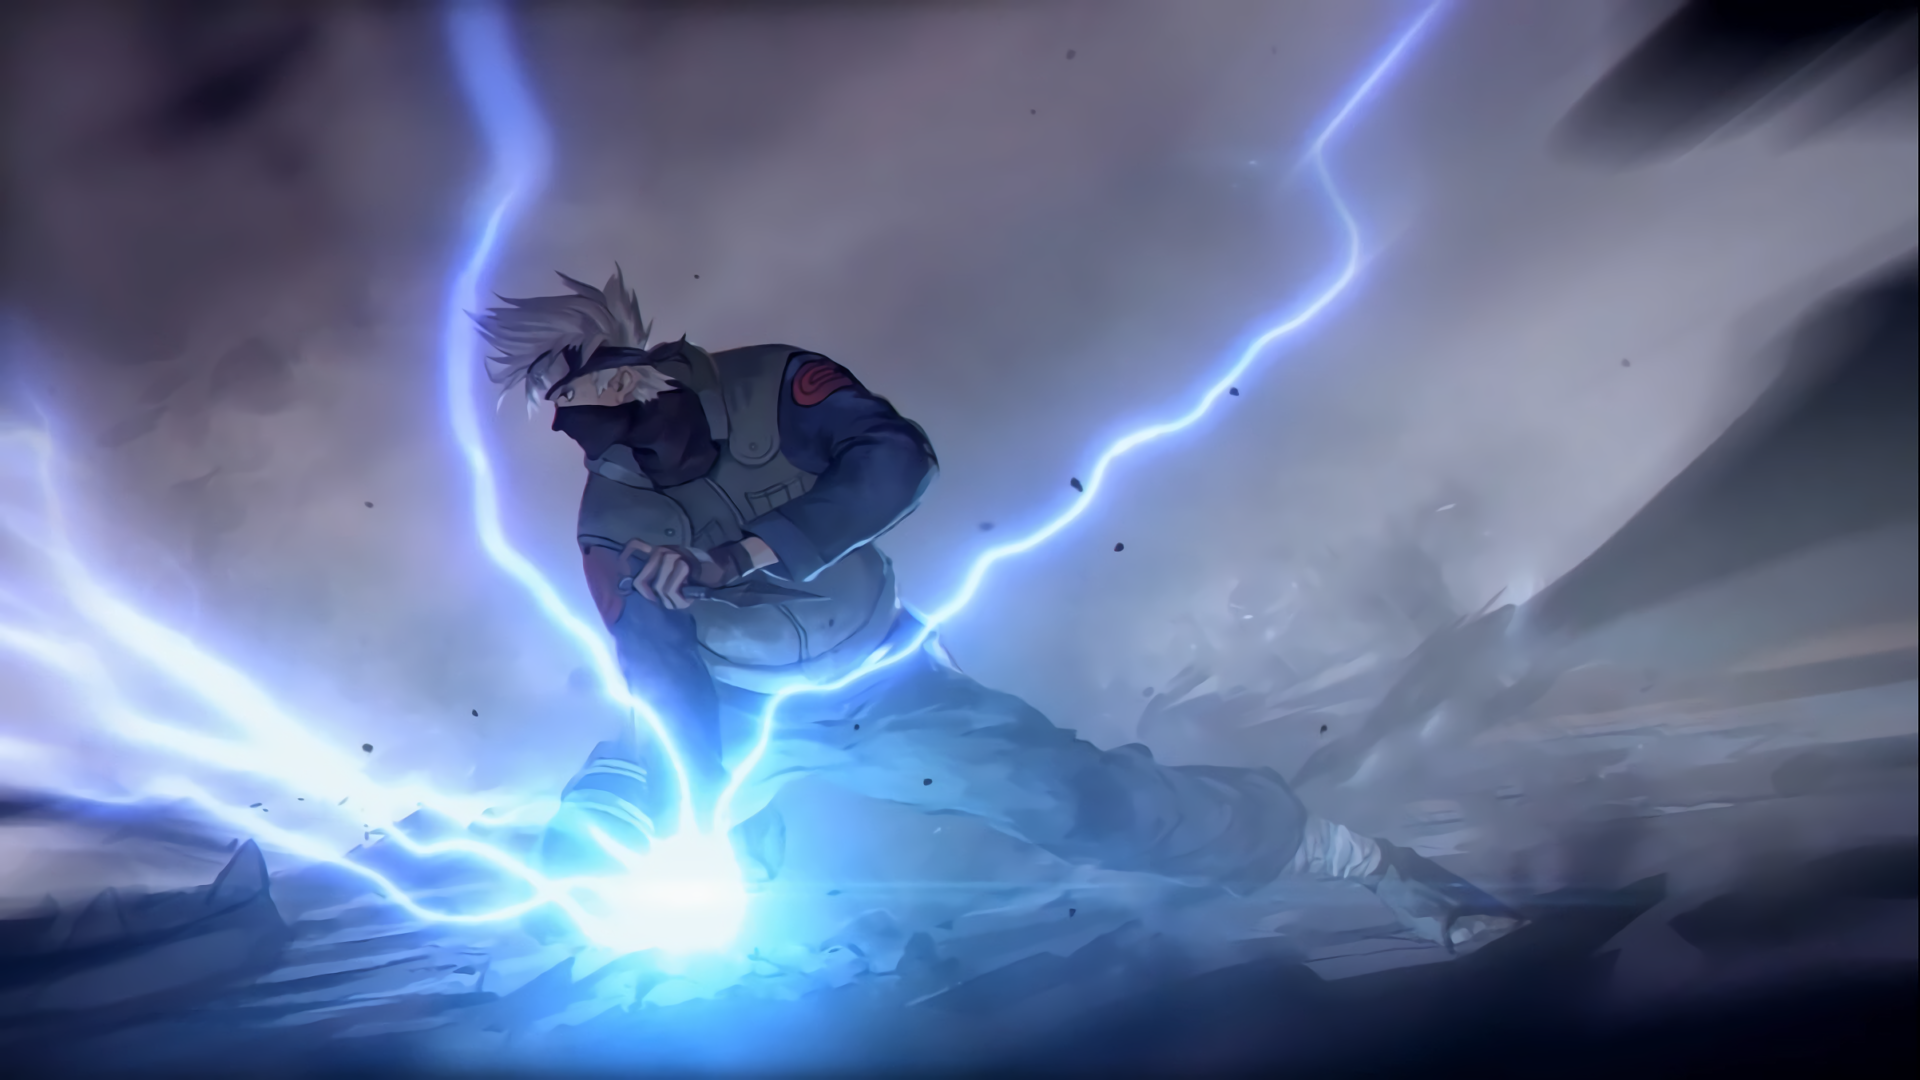 kakashi wallpaper,sky,space,anime,lightning,cg artwork